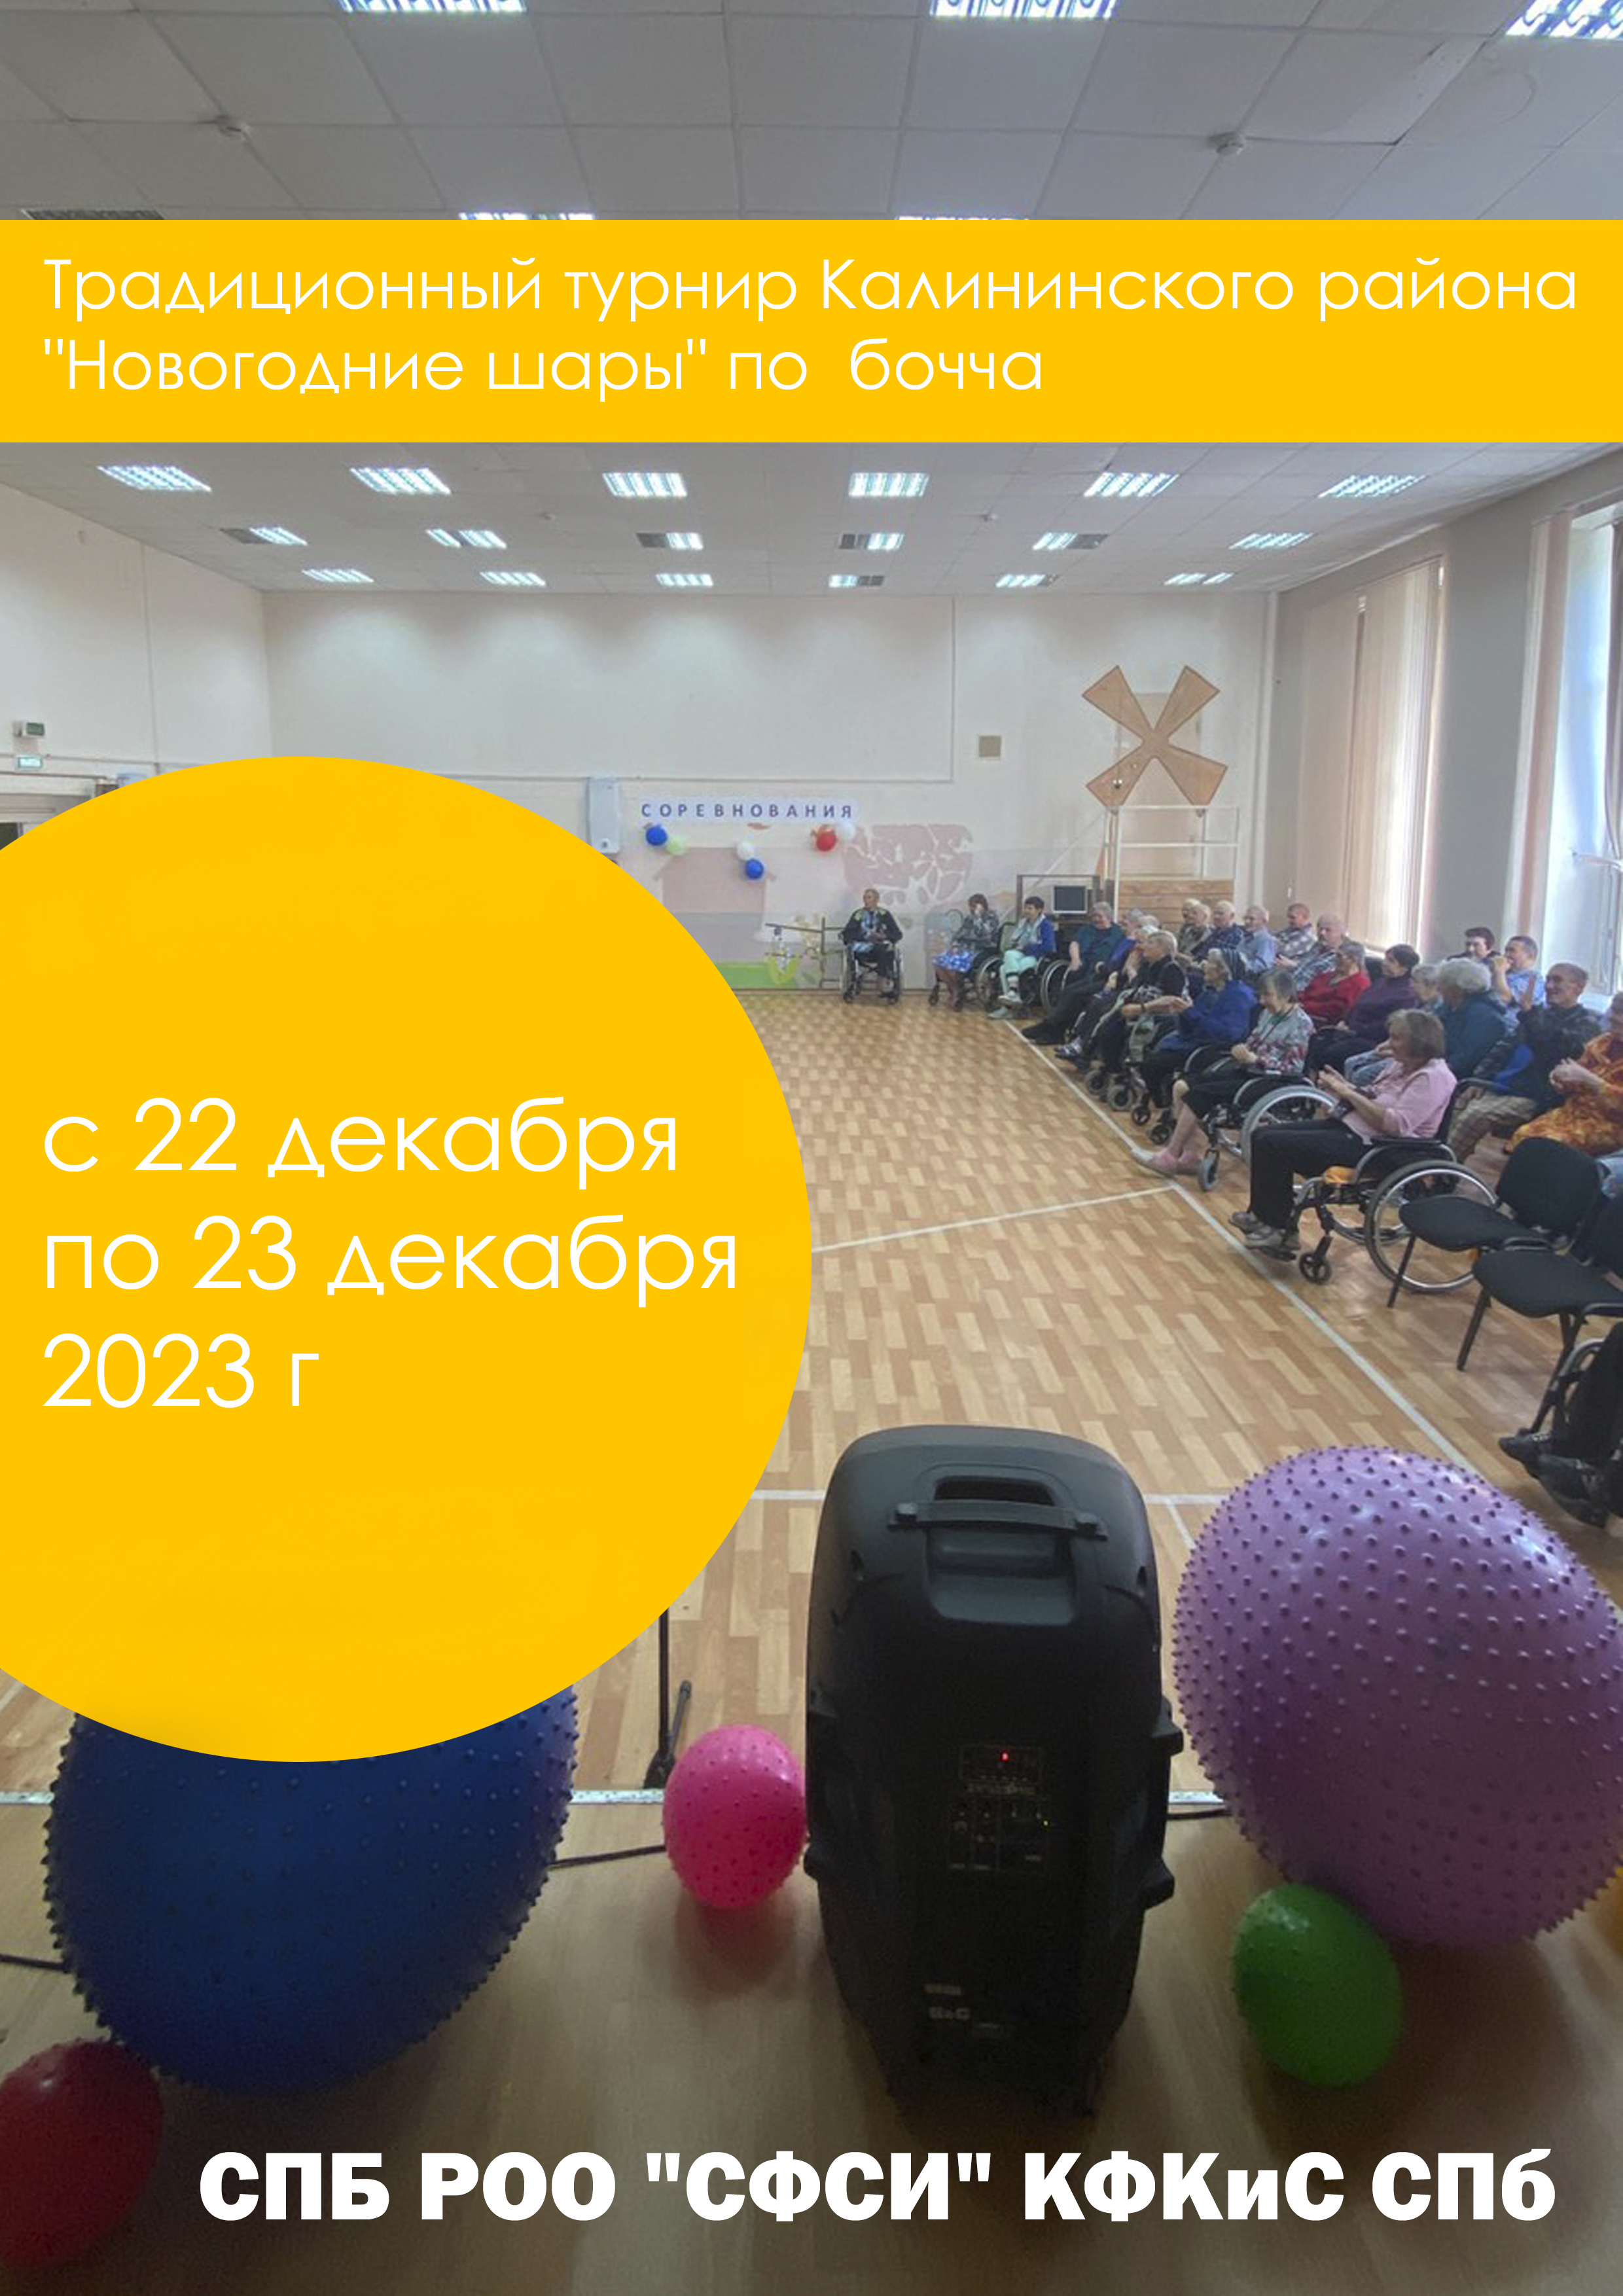 Традиционный турнир Калининского района "Новогодние шары" по бочча 2023 22  डिसेम्बर
 2023  वर्ष
 